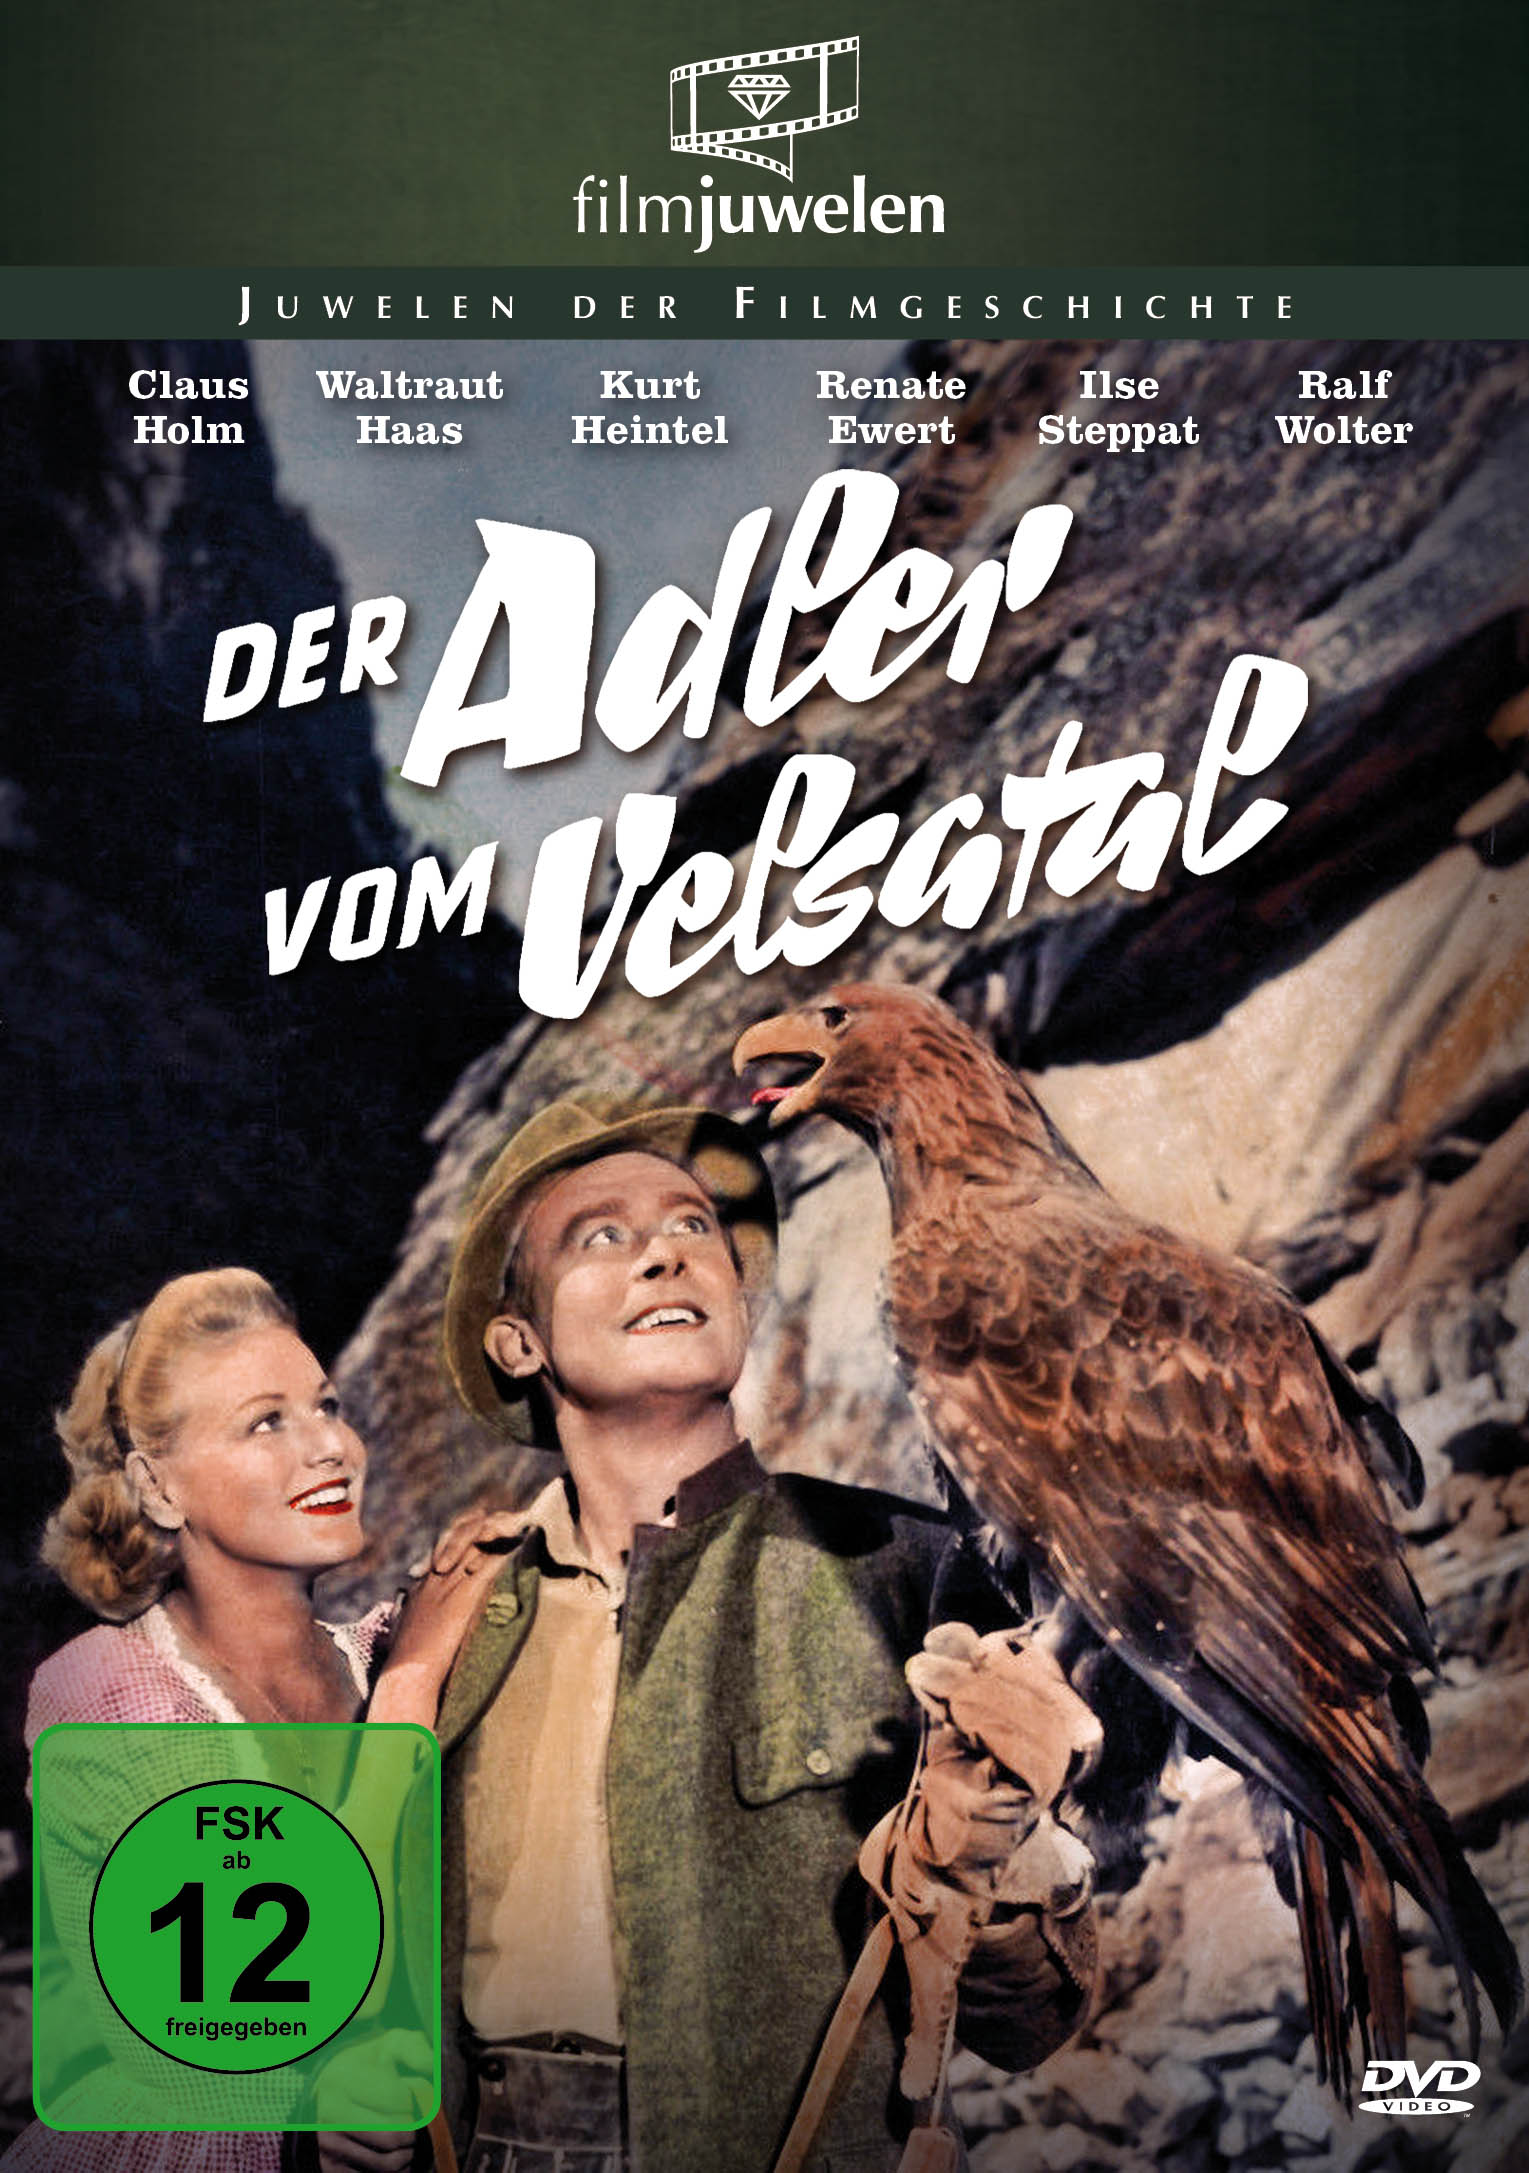 vom Adler DVD Der Velsatal